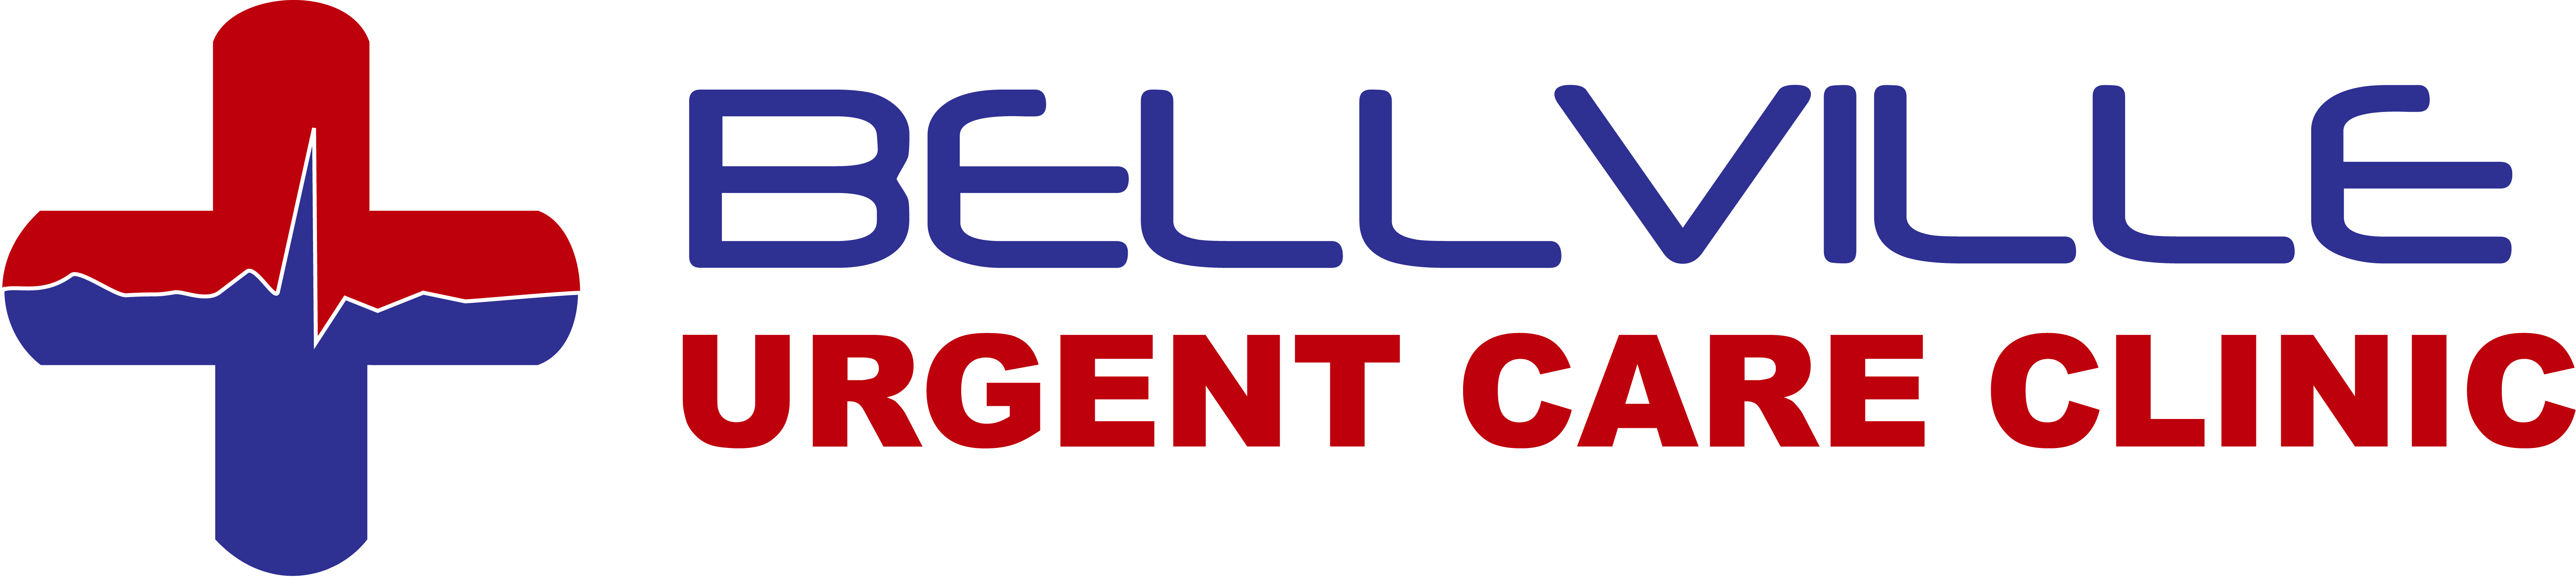 Bellville Urgent Care - Westheimer Logo